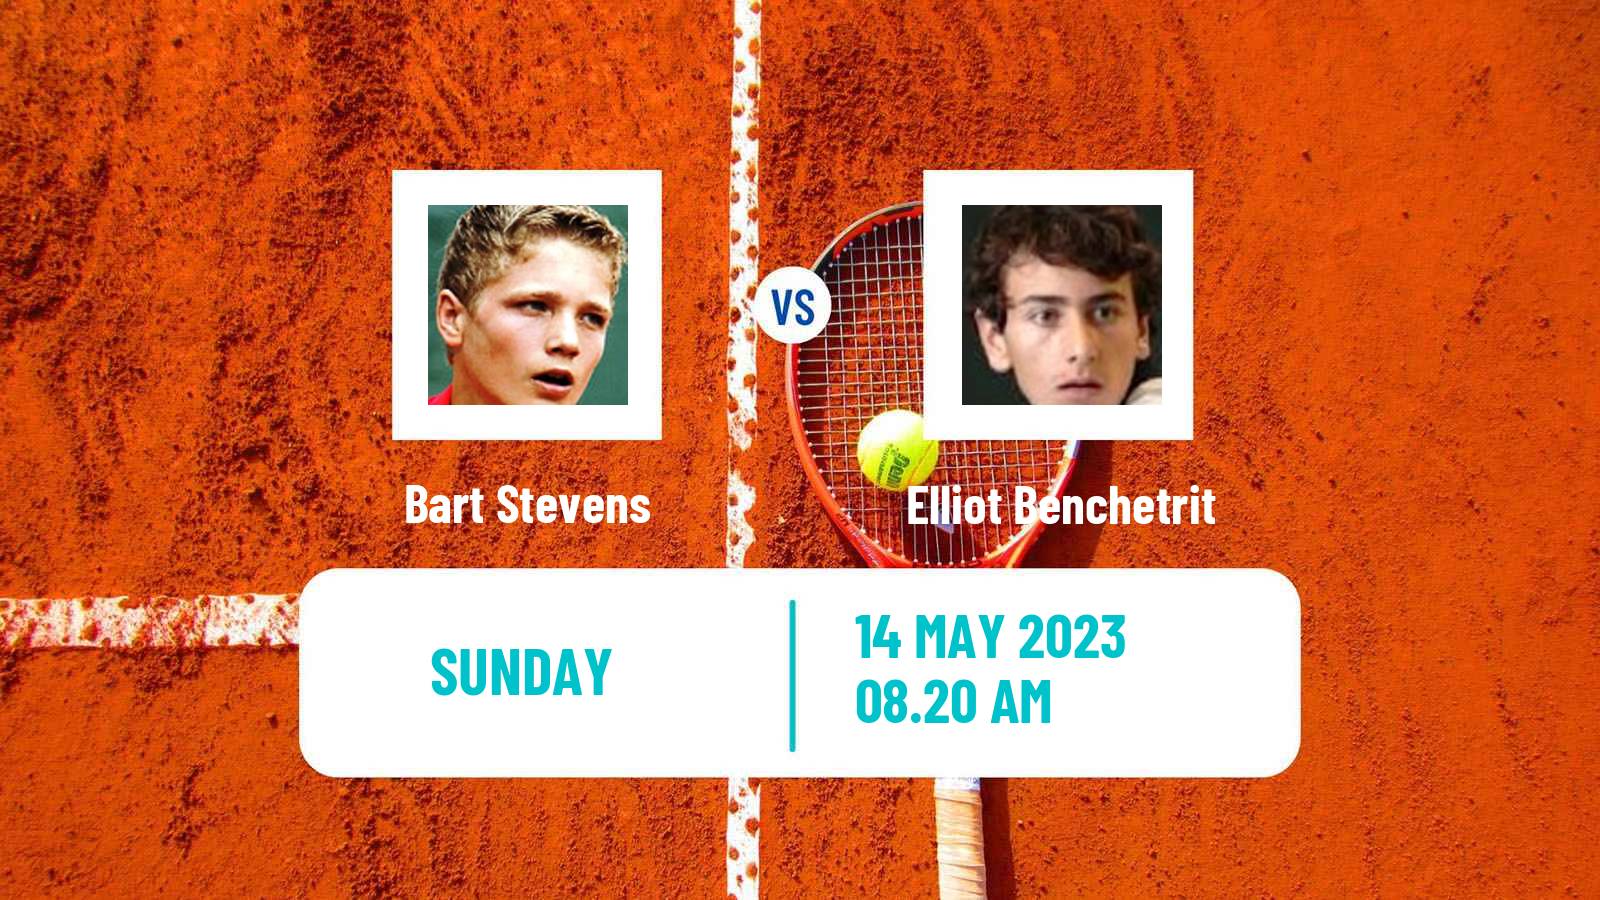 Tennis ATP Challenger Bart Stevens - Elliot Benchetrit